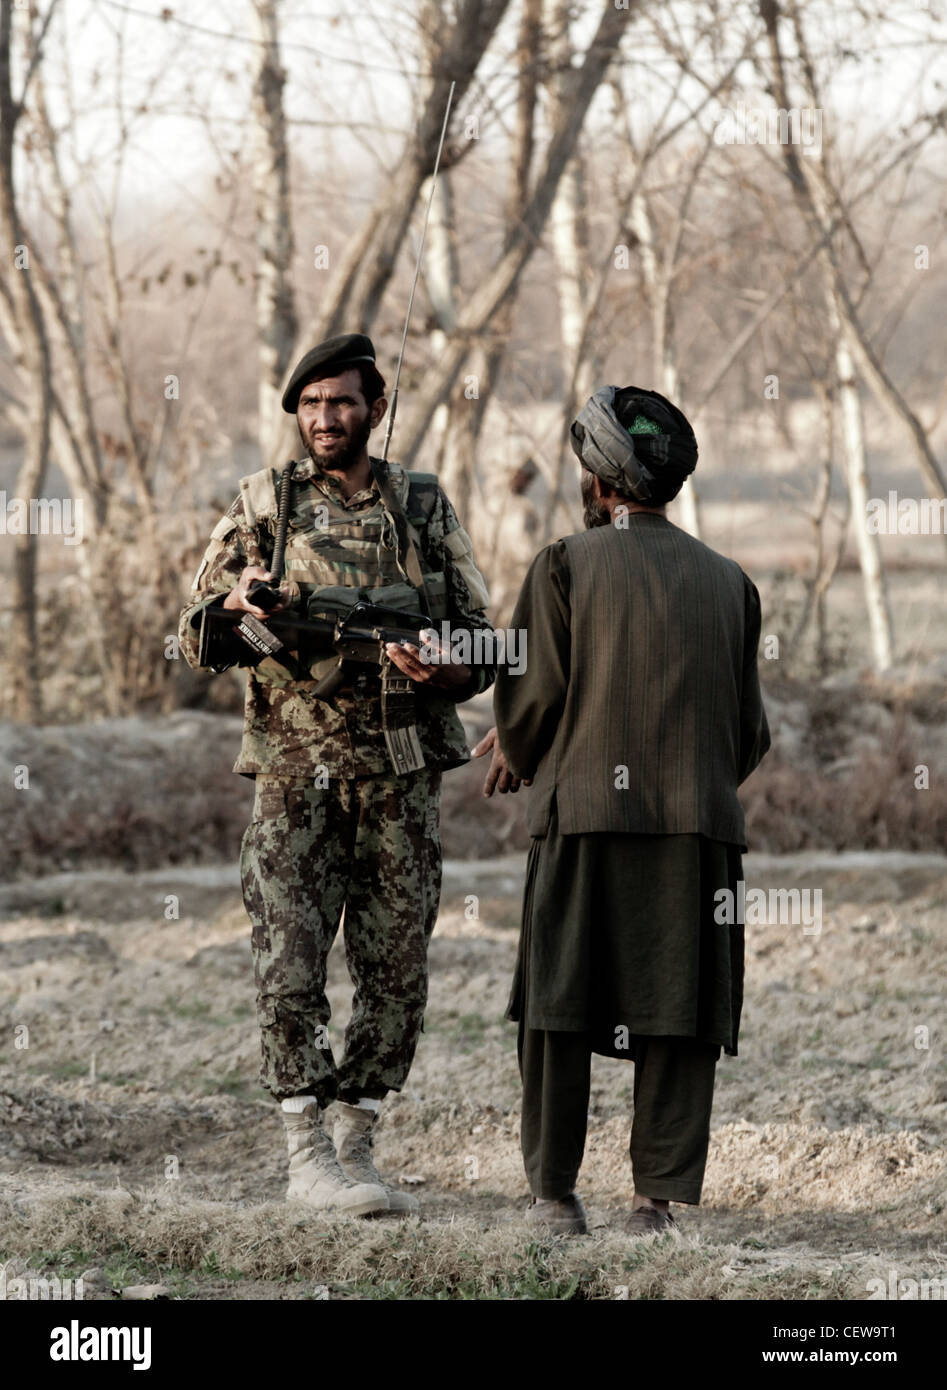 DISTRICT DE SANGIN, province de Helmand, Afghanistan - Cpl. De lance de l'Armée nationale afghane DIN Mohammed, opérateur radio avec le 3e Tolai, 2e Kandak, 2e Brigade, 215e corps, parle avec un villageois local lors d'une patrouille de sécurité ici, février 9. Les Marines des États-Unis ont récemment transféré à l'ANA l'autorité de la base de patrouille locale Hanjar Yak. Les soldats afghans assurent la sécurité de la région locale en effectuant des patrouilles et en entretenant des relations positives avec les villageois locaux. Banque D'Images